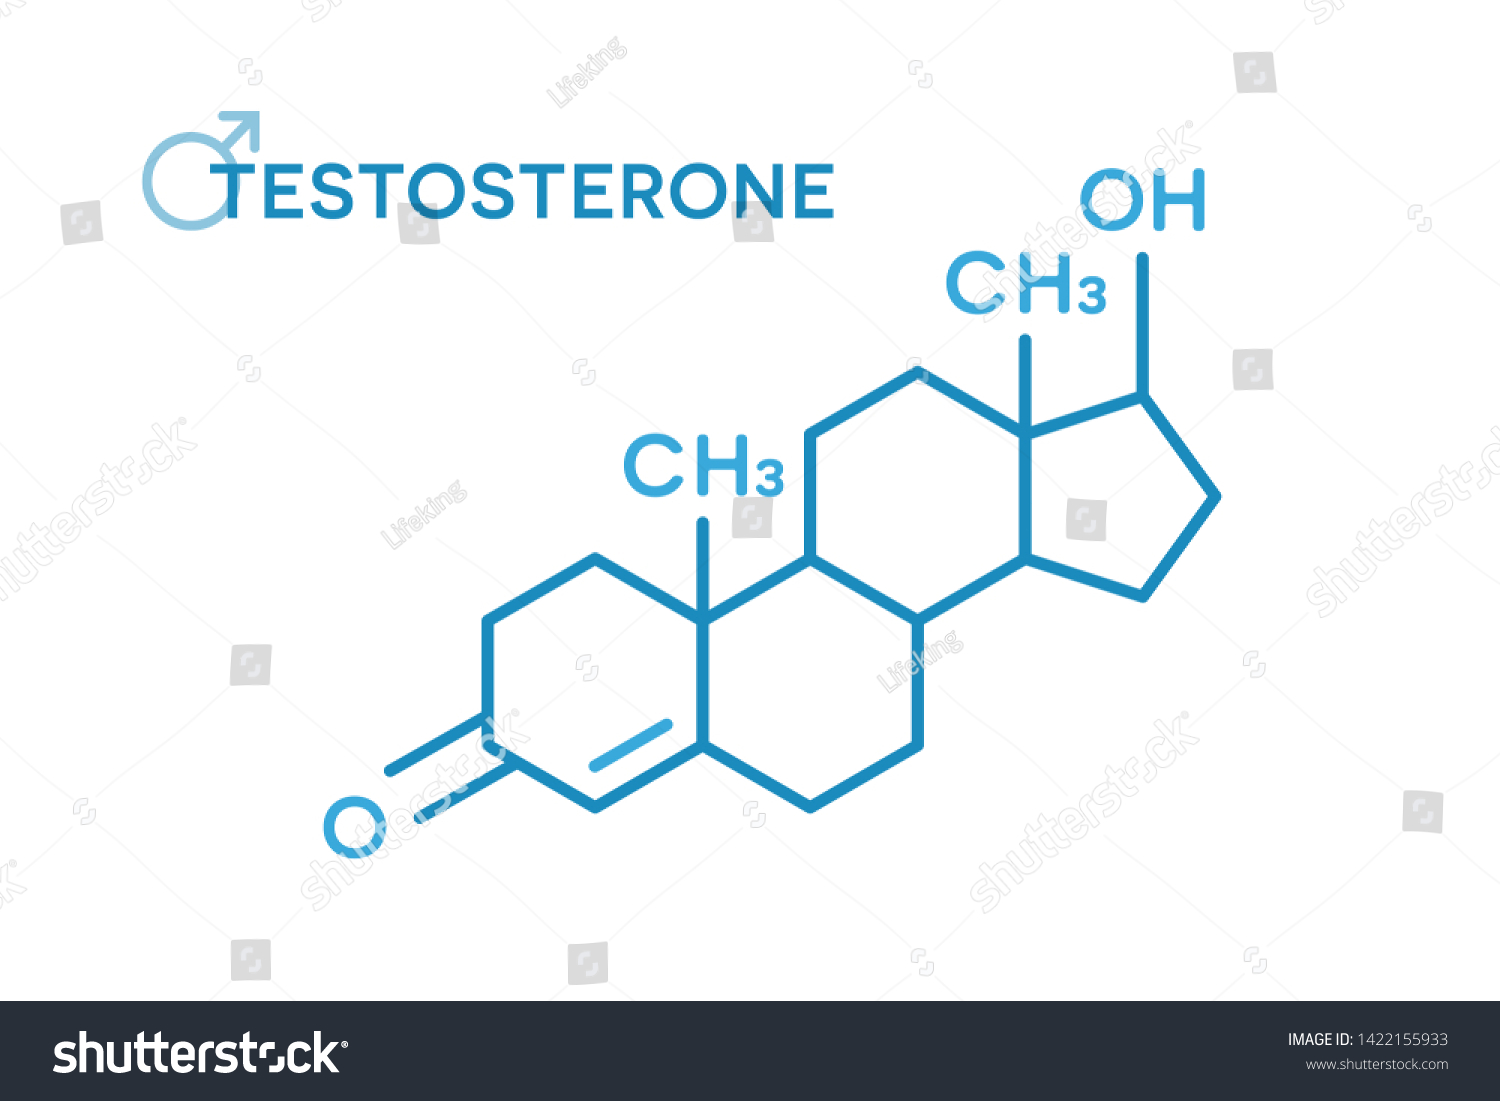 Testosterone Hormones Molecular Formula Sex Hormone Stock Vector Royalty Free 1422155933 8204